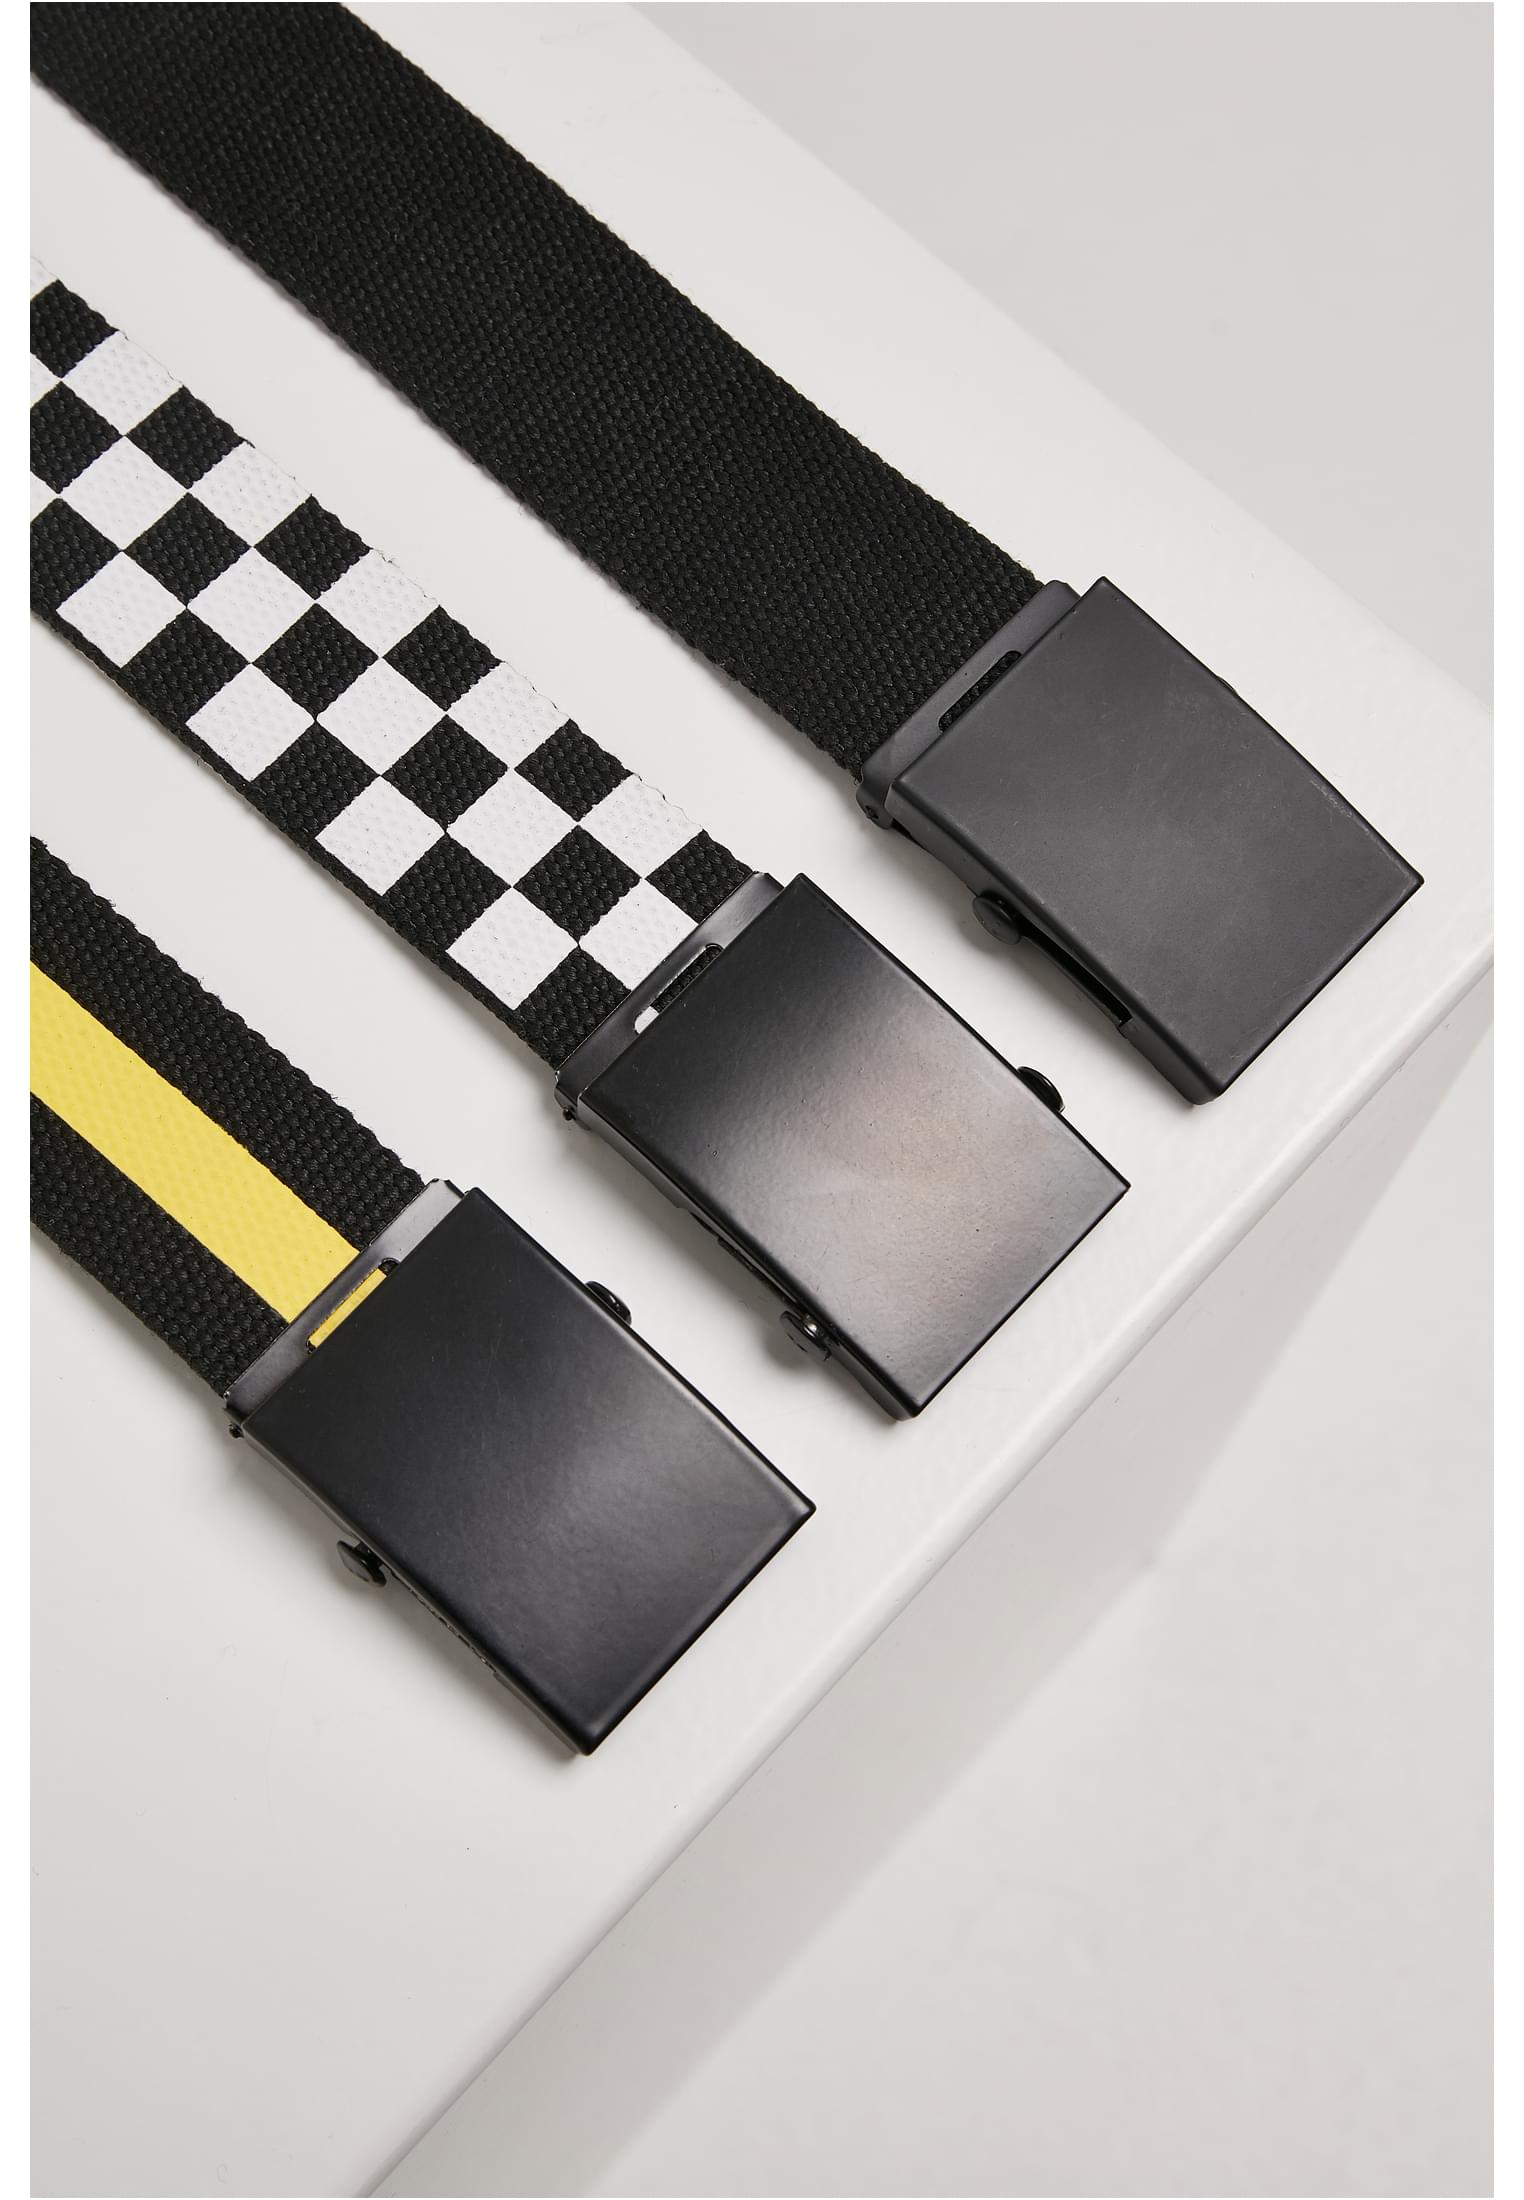 Accessories Belts Trio in Farbe black/white/yellow